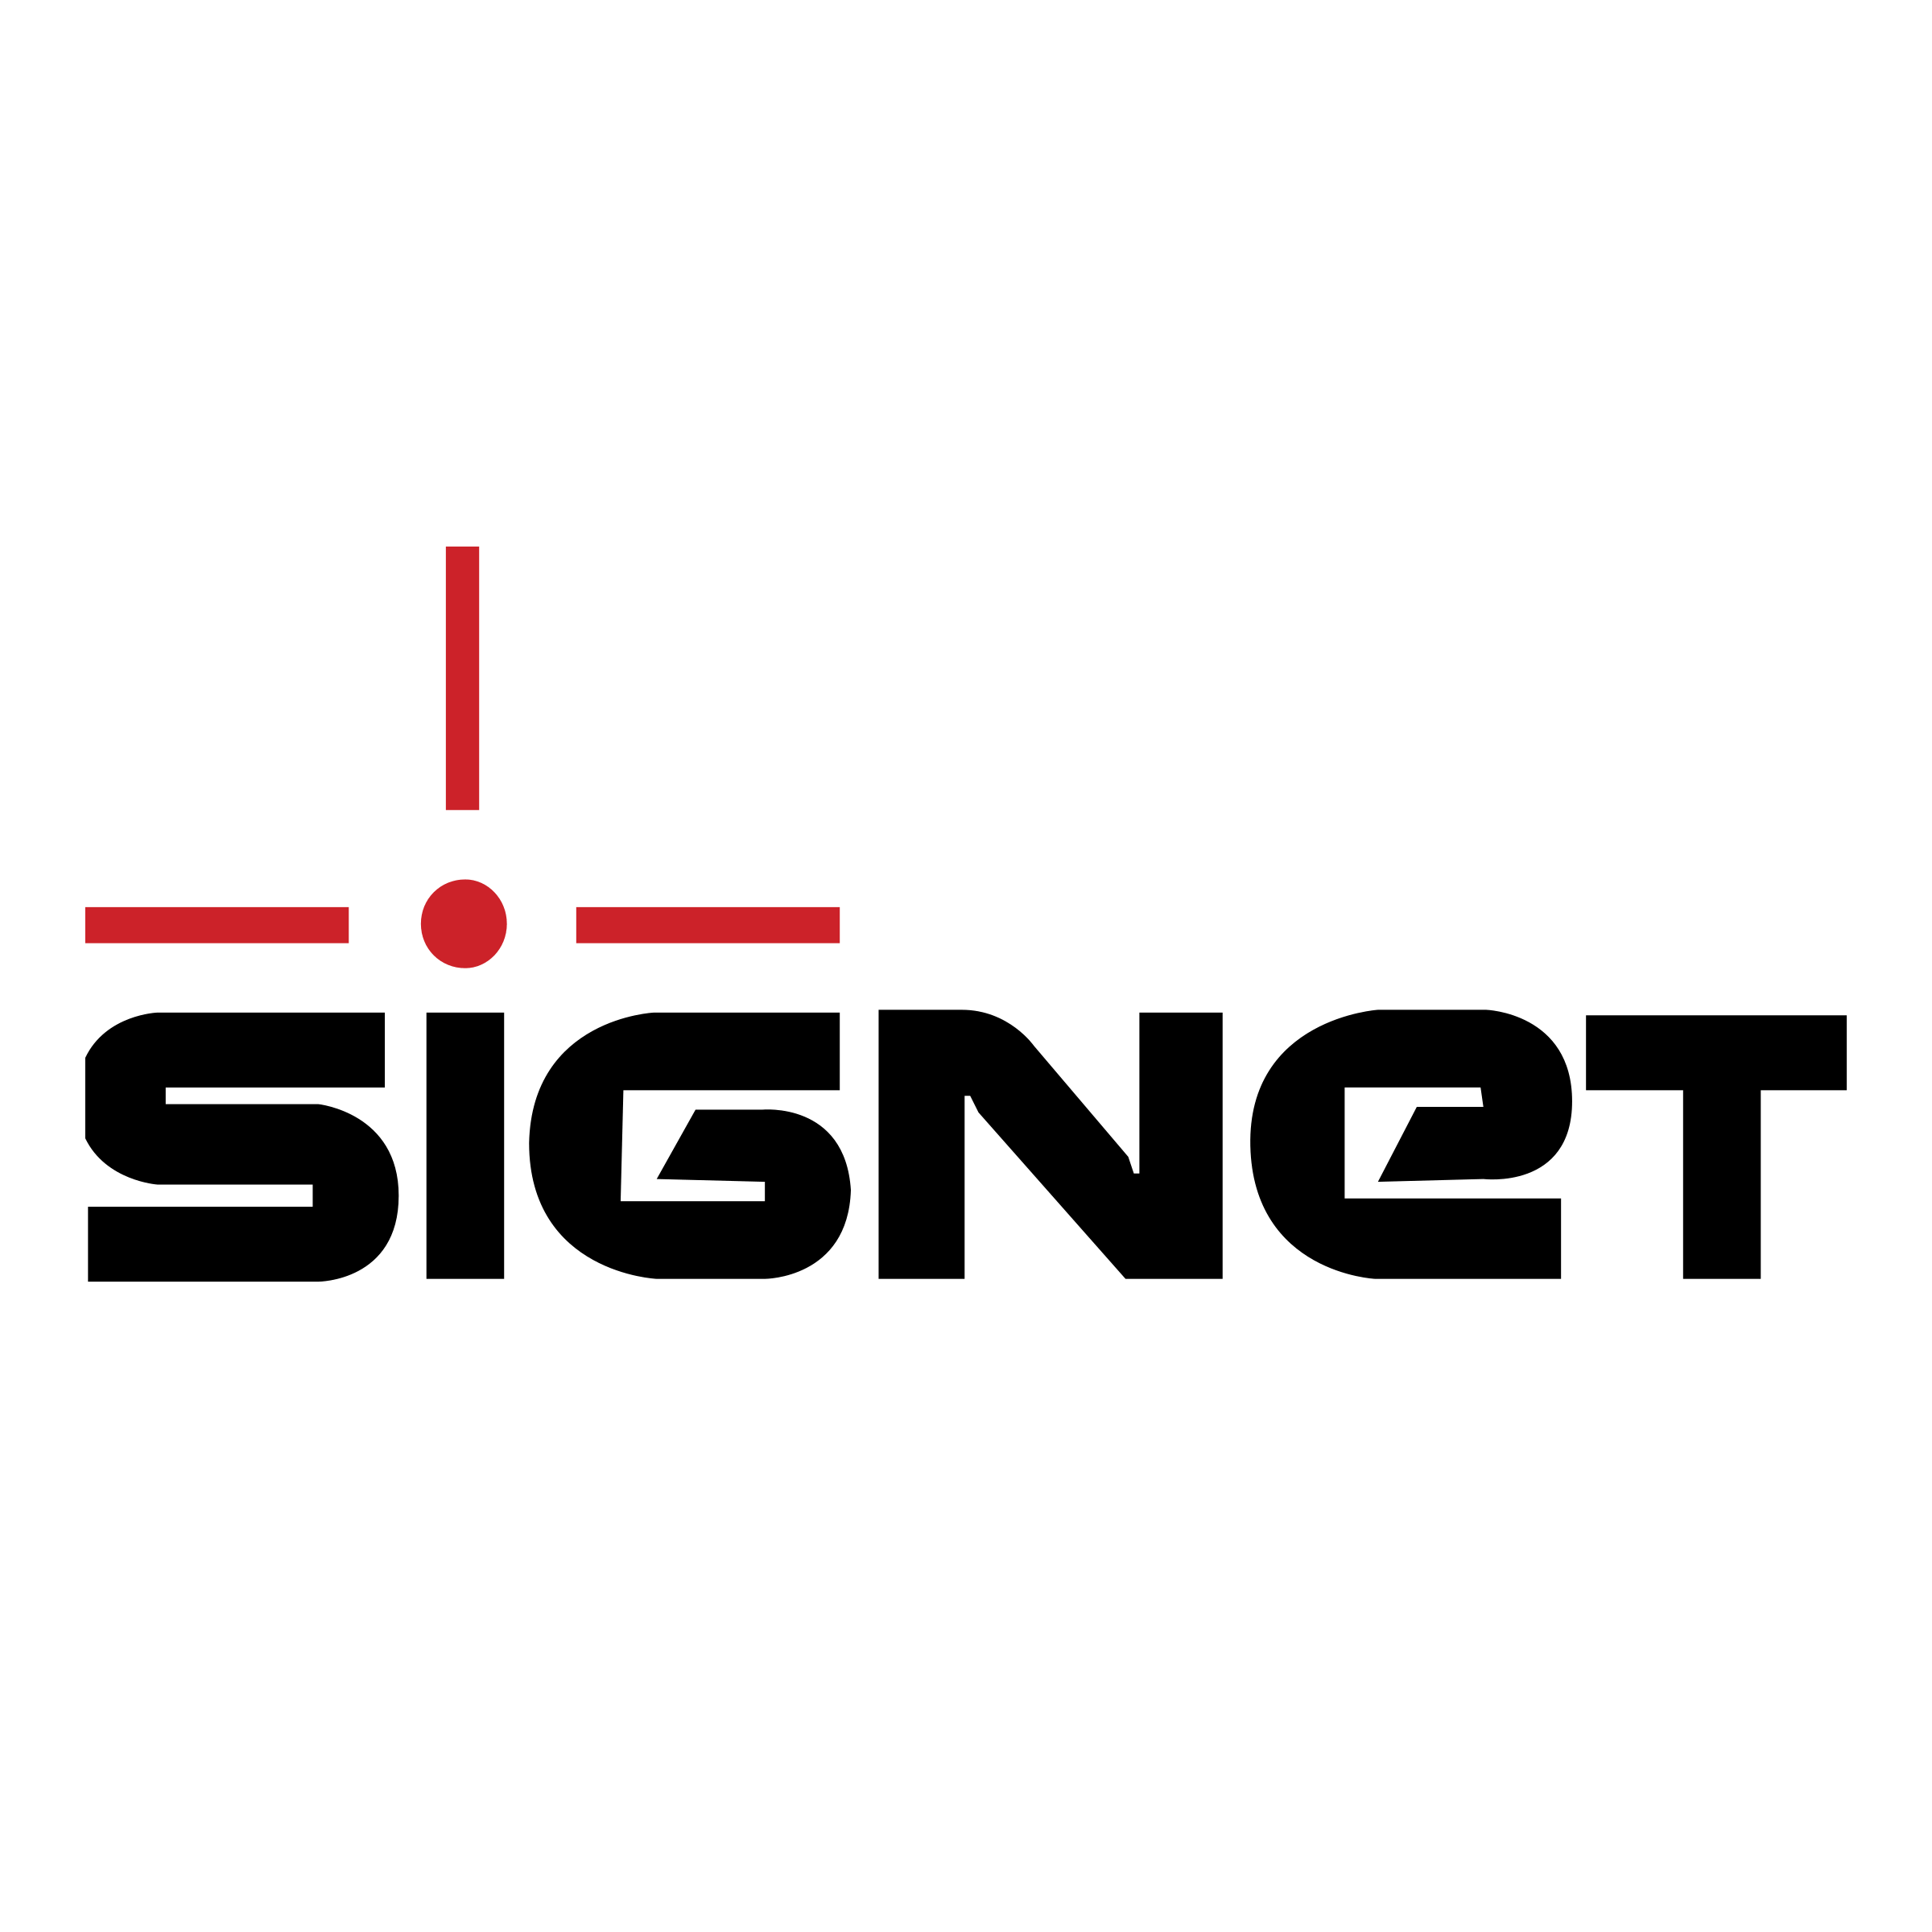 Signet Logo - Signet Logo PNG Transparent & SVG Vector